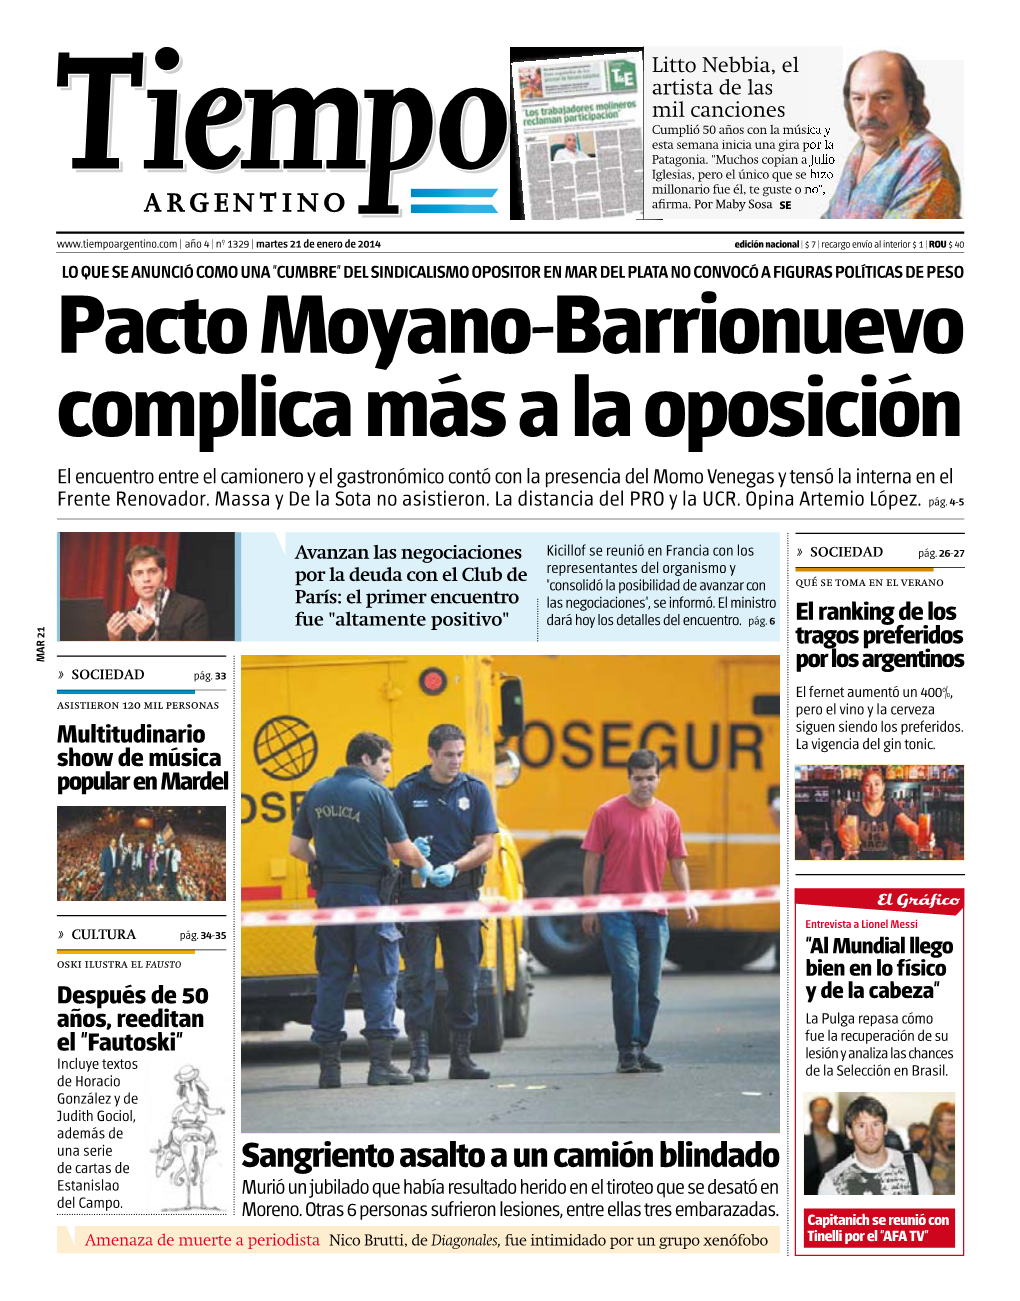 Pacto Moyano-Barrionuevo Complica Más a La Oposición